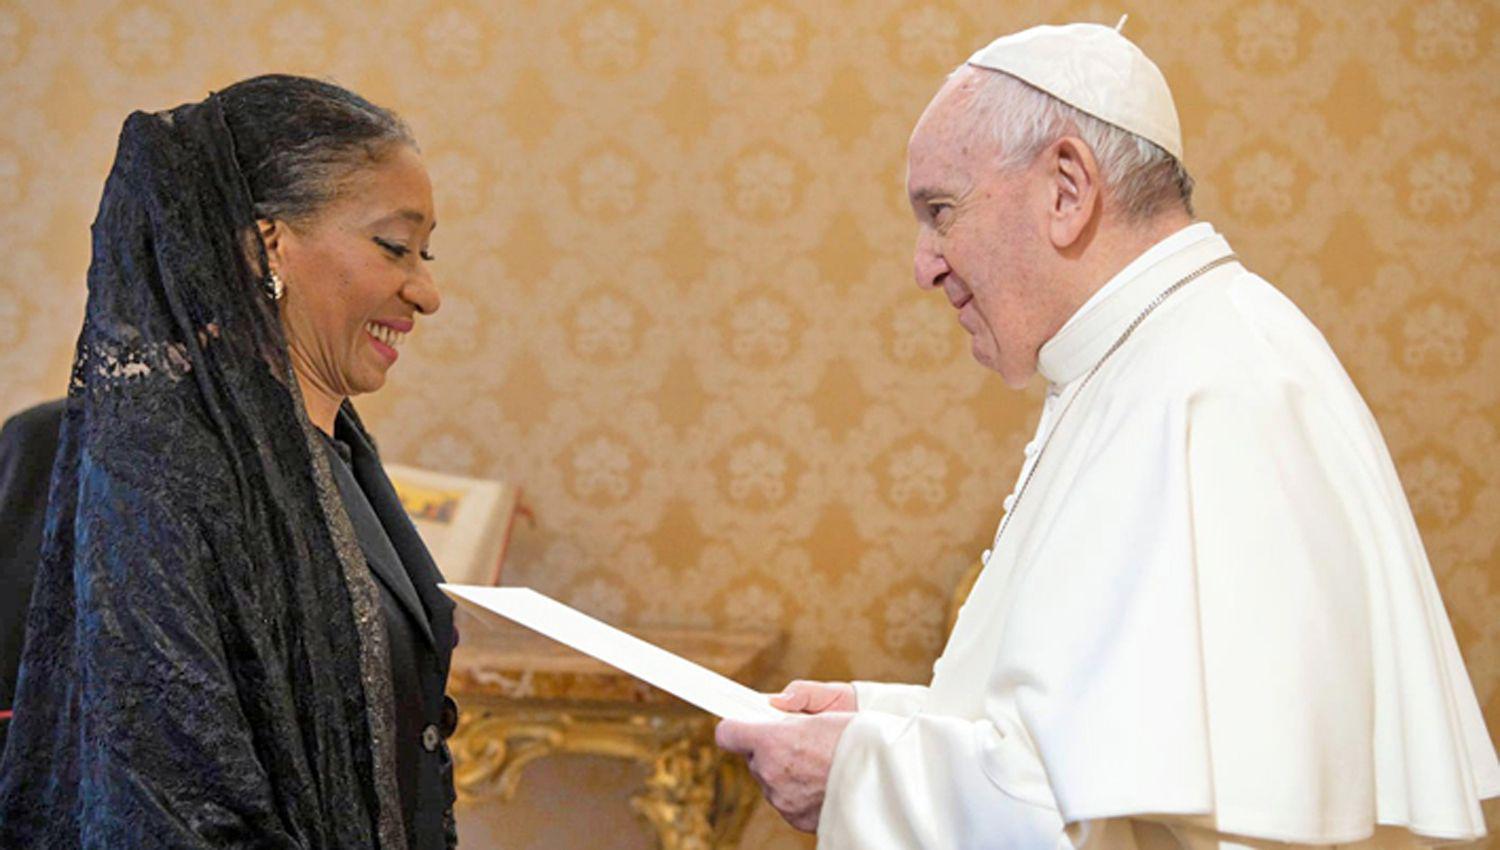 PARTICULARIDAD Silva es la primera afrodescendiente en llegar a embajadora y ya estuvo como n�mero 2 de la Embajada ante el Vaticano
